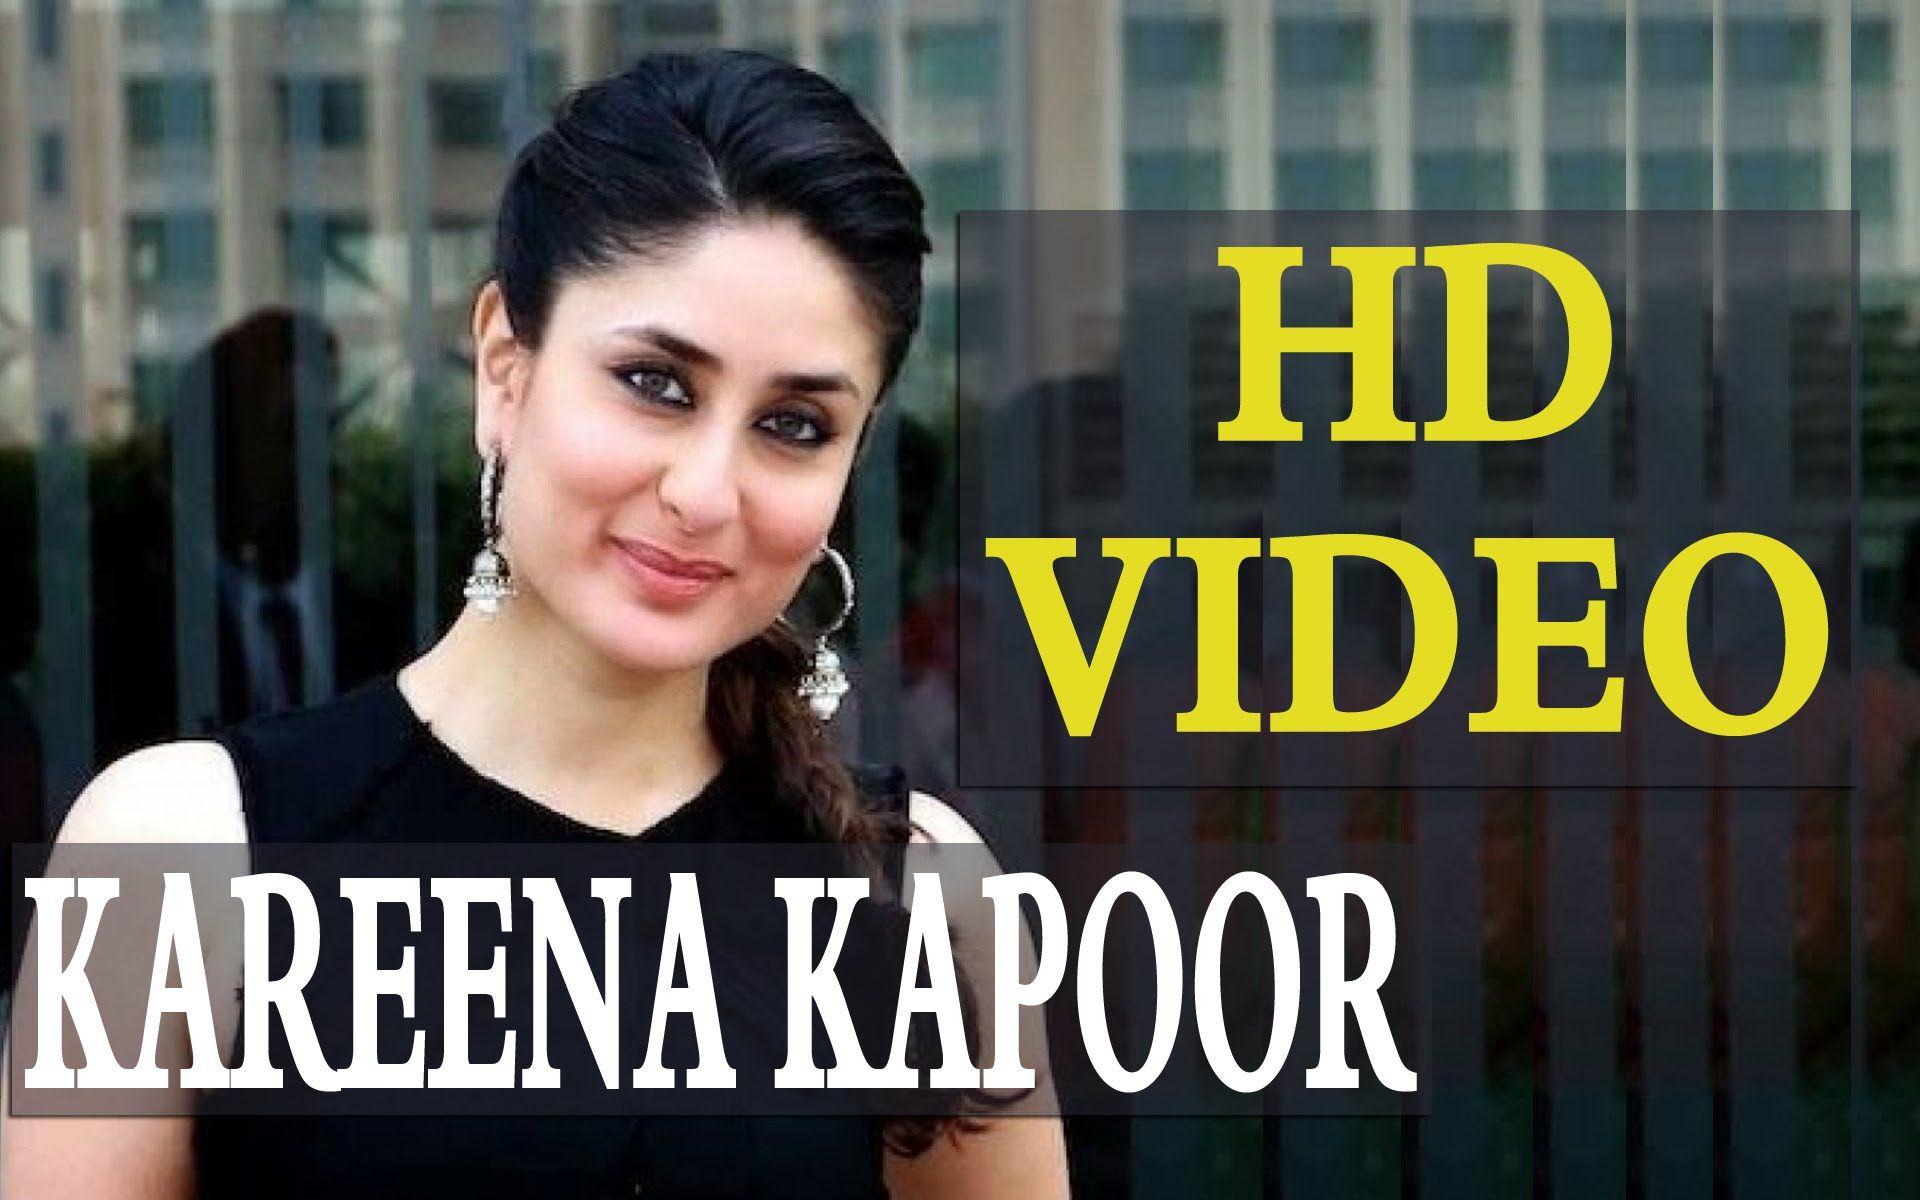 Kareena Kapoor. HD Video. Latest Movie News, Pics